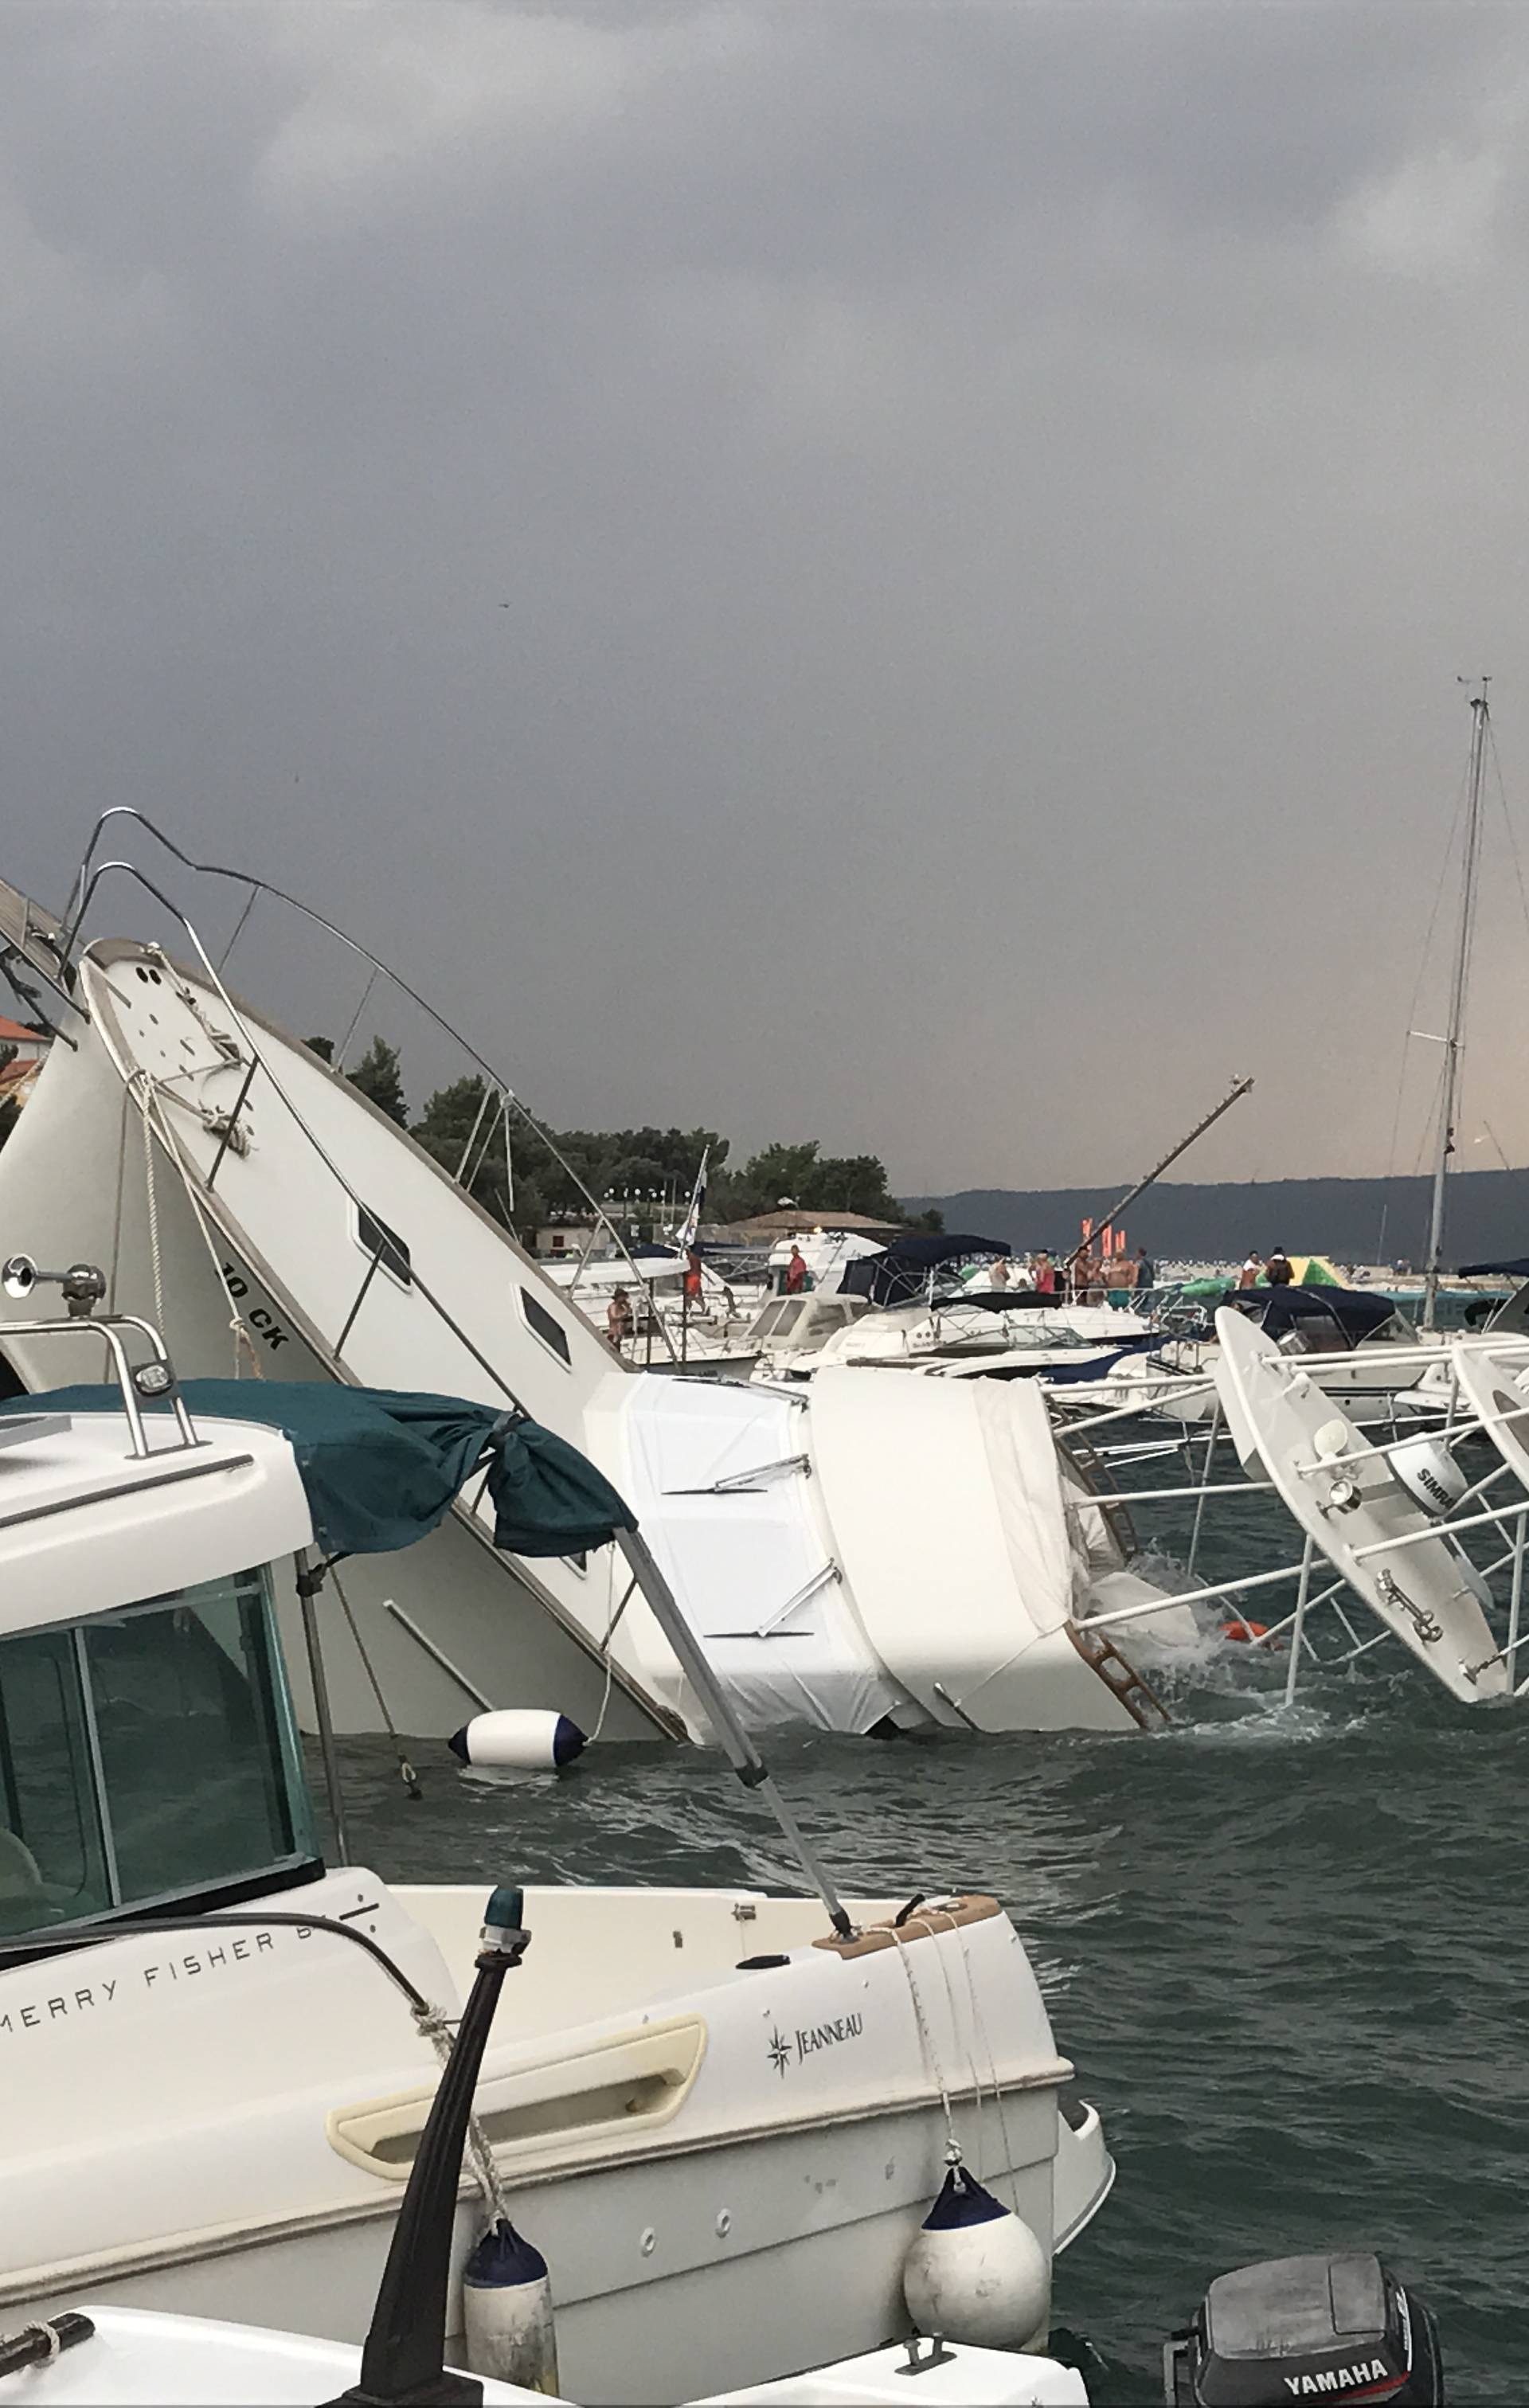 Olujni oblak iz Italije stigao u Istru: 'Cijelo nebo se zacrnilo'